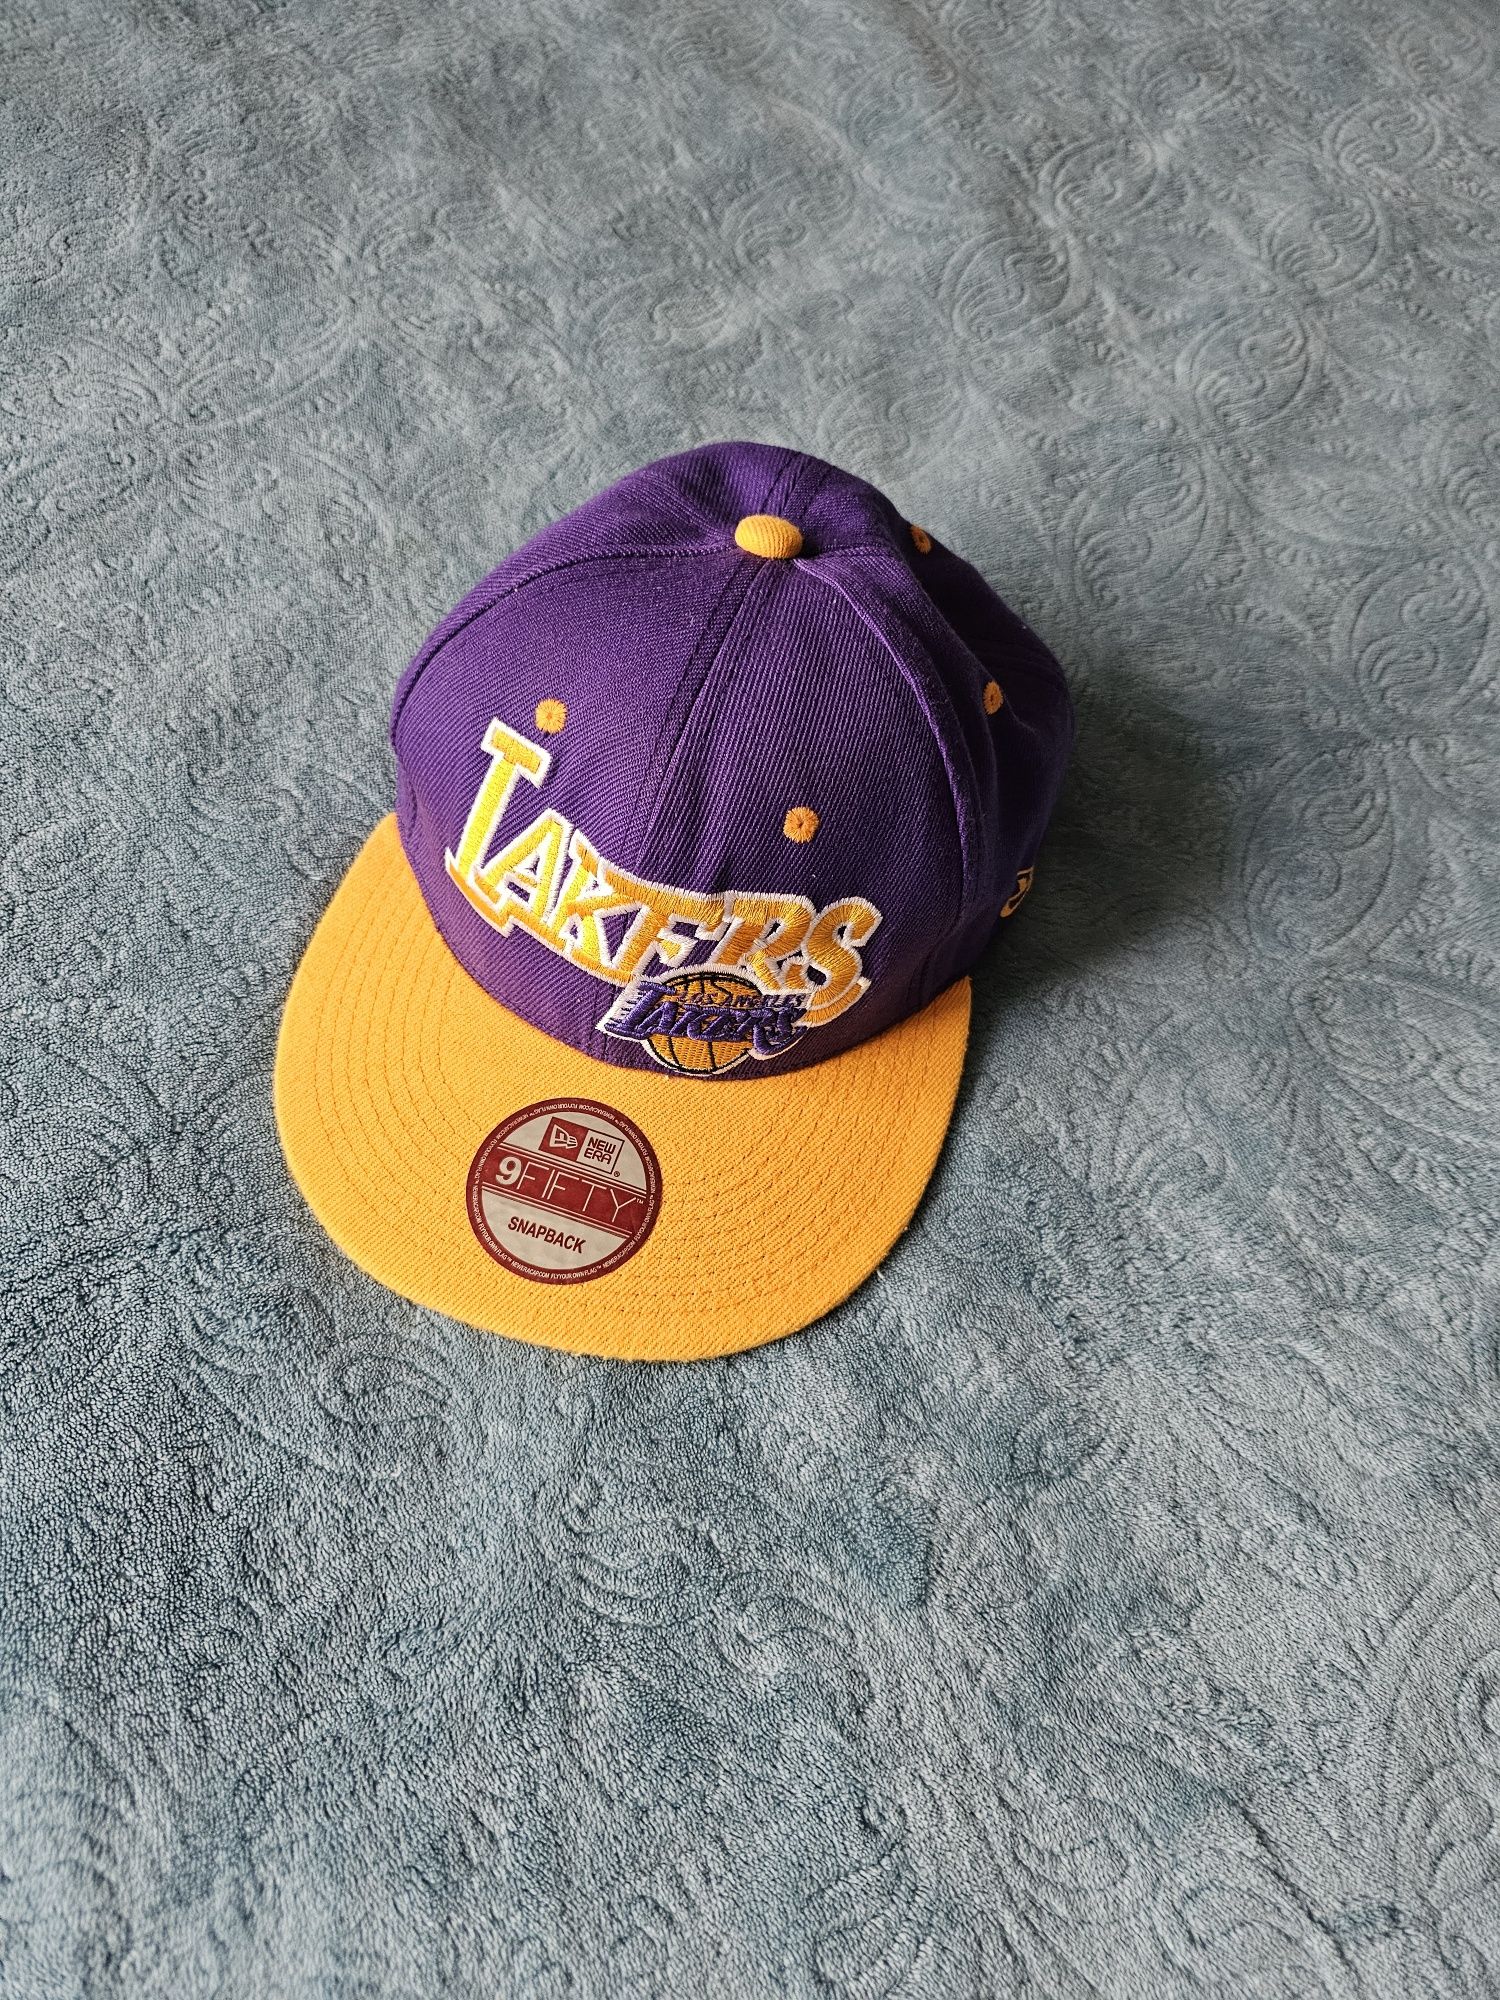 Кепка New Era Lakers бейсболка NBA snapback